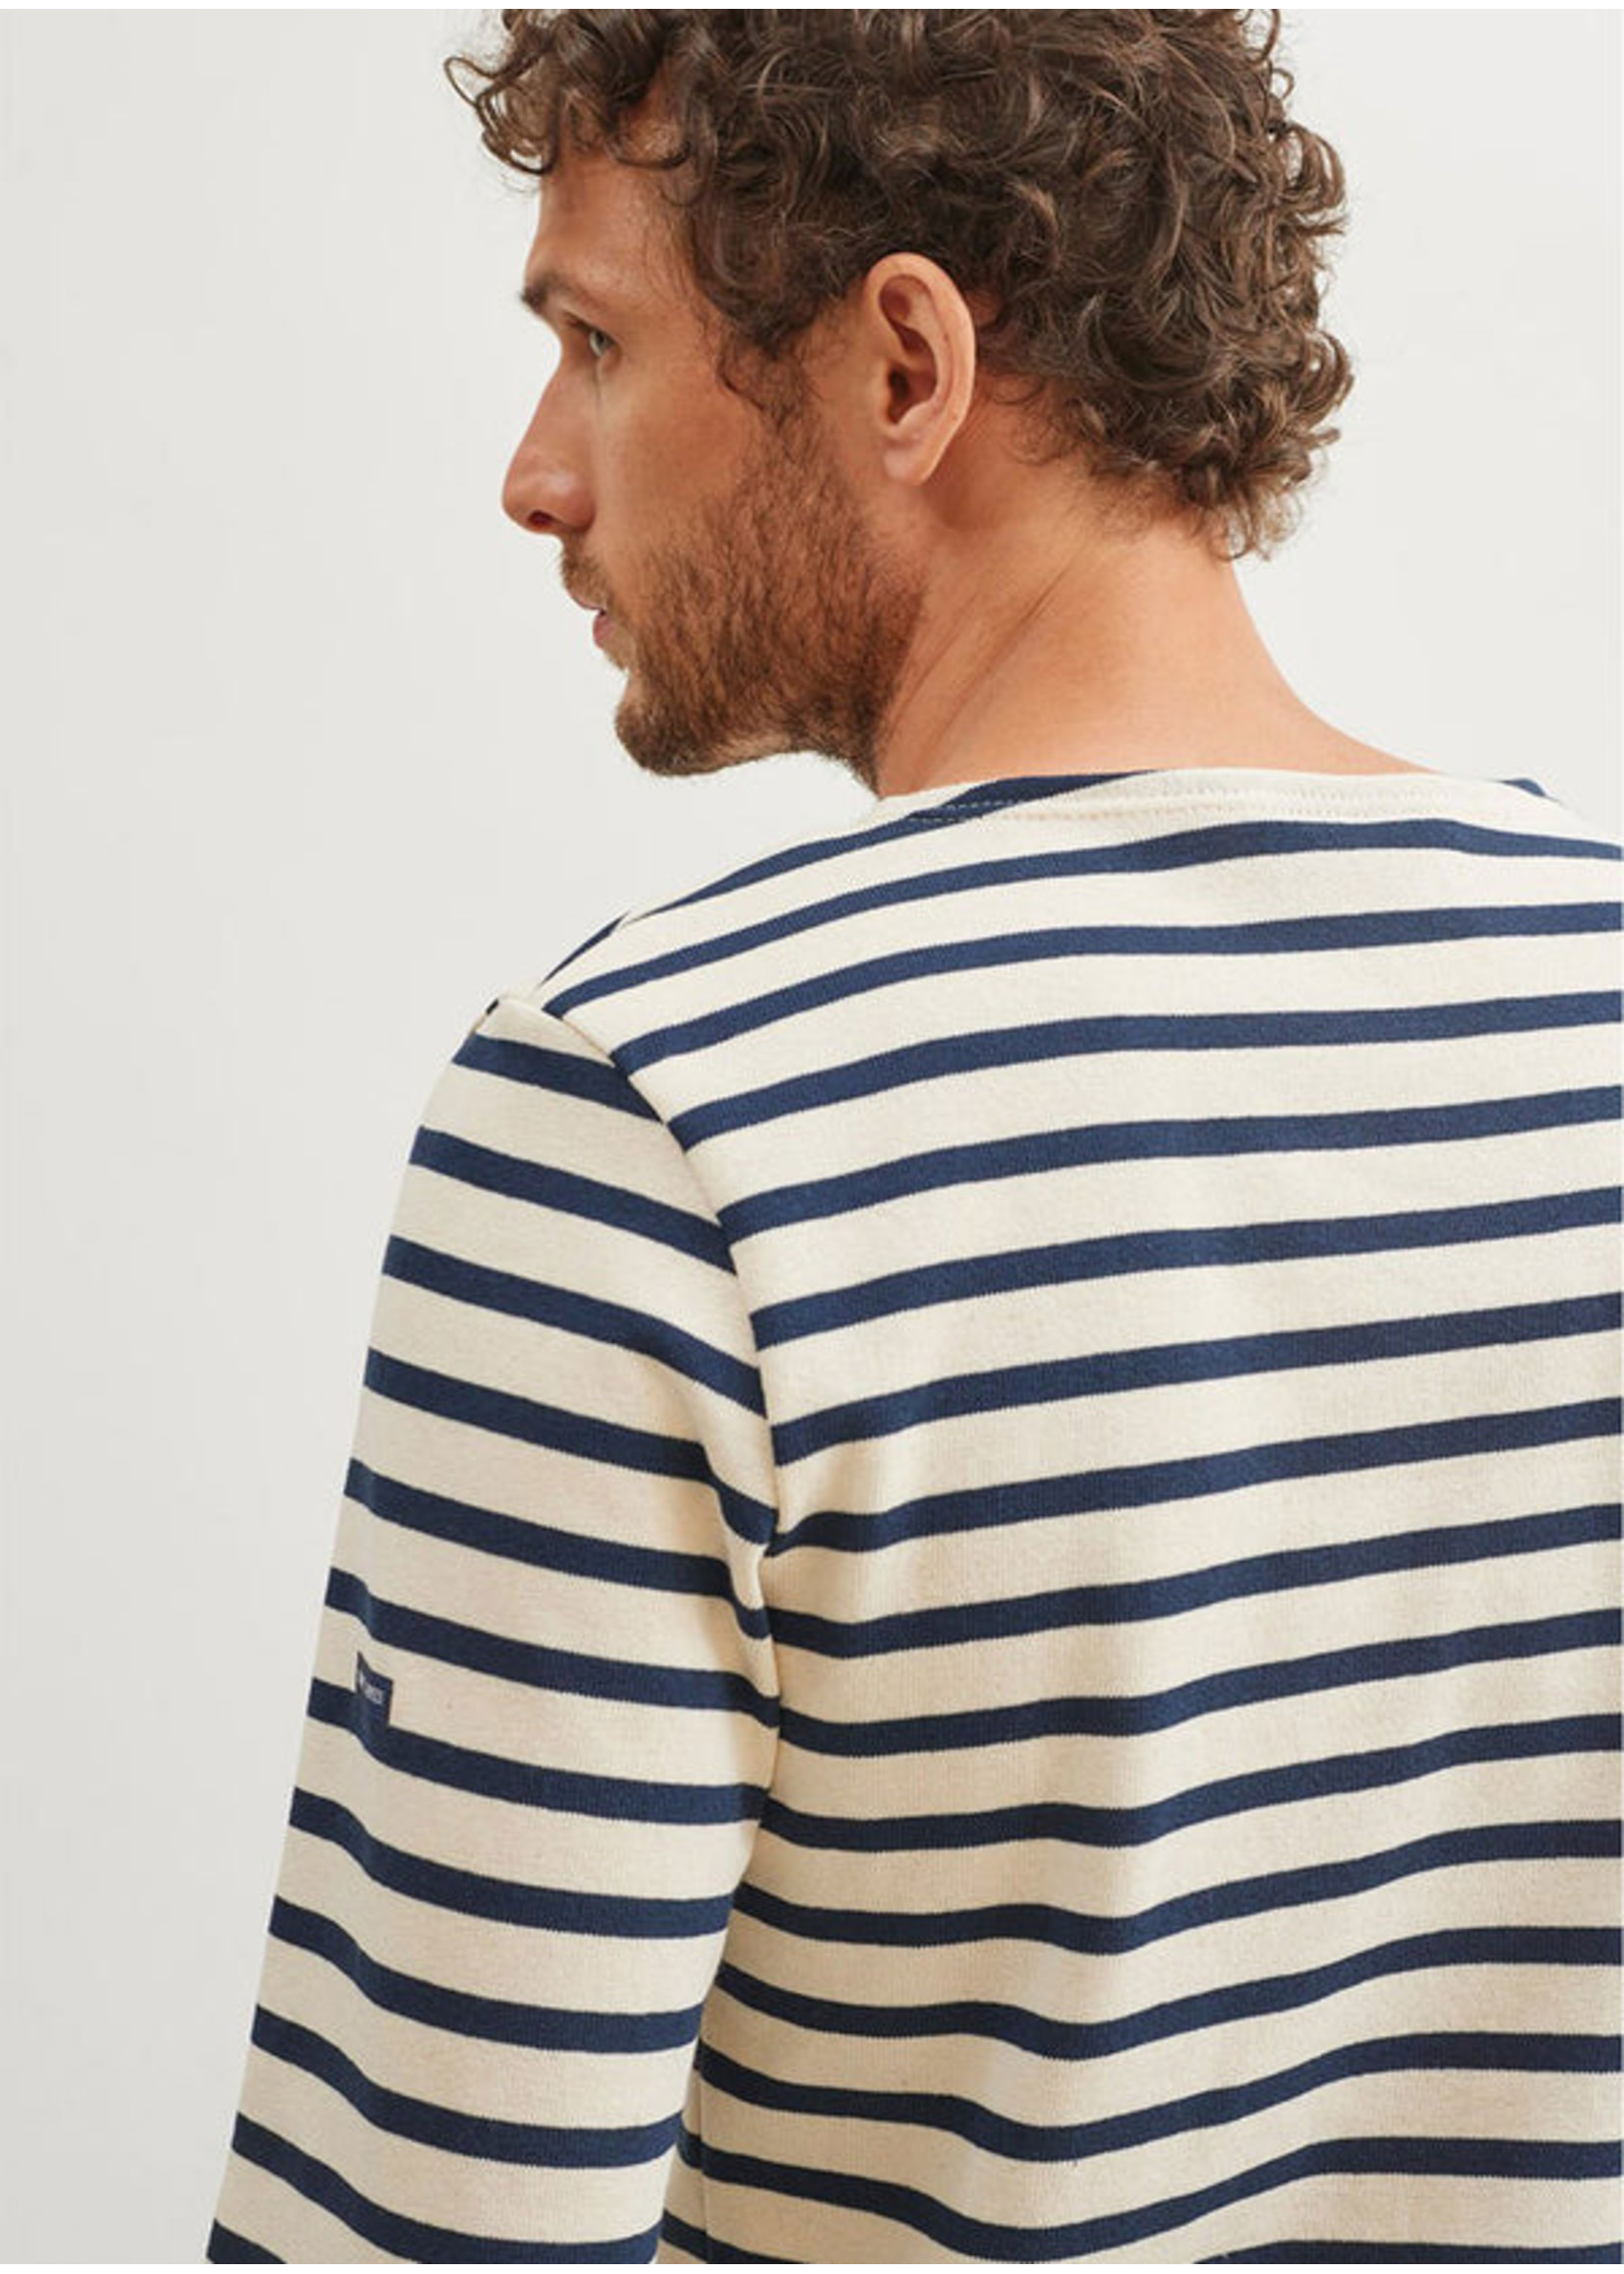 SAINT-JAMES Authentic Meridien breton cotton stripe shirt by Saint-James - Unisex fit